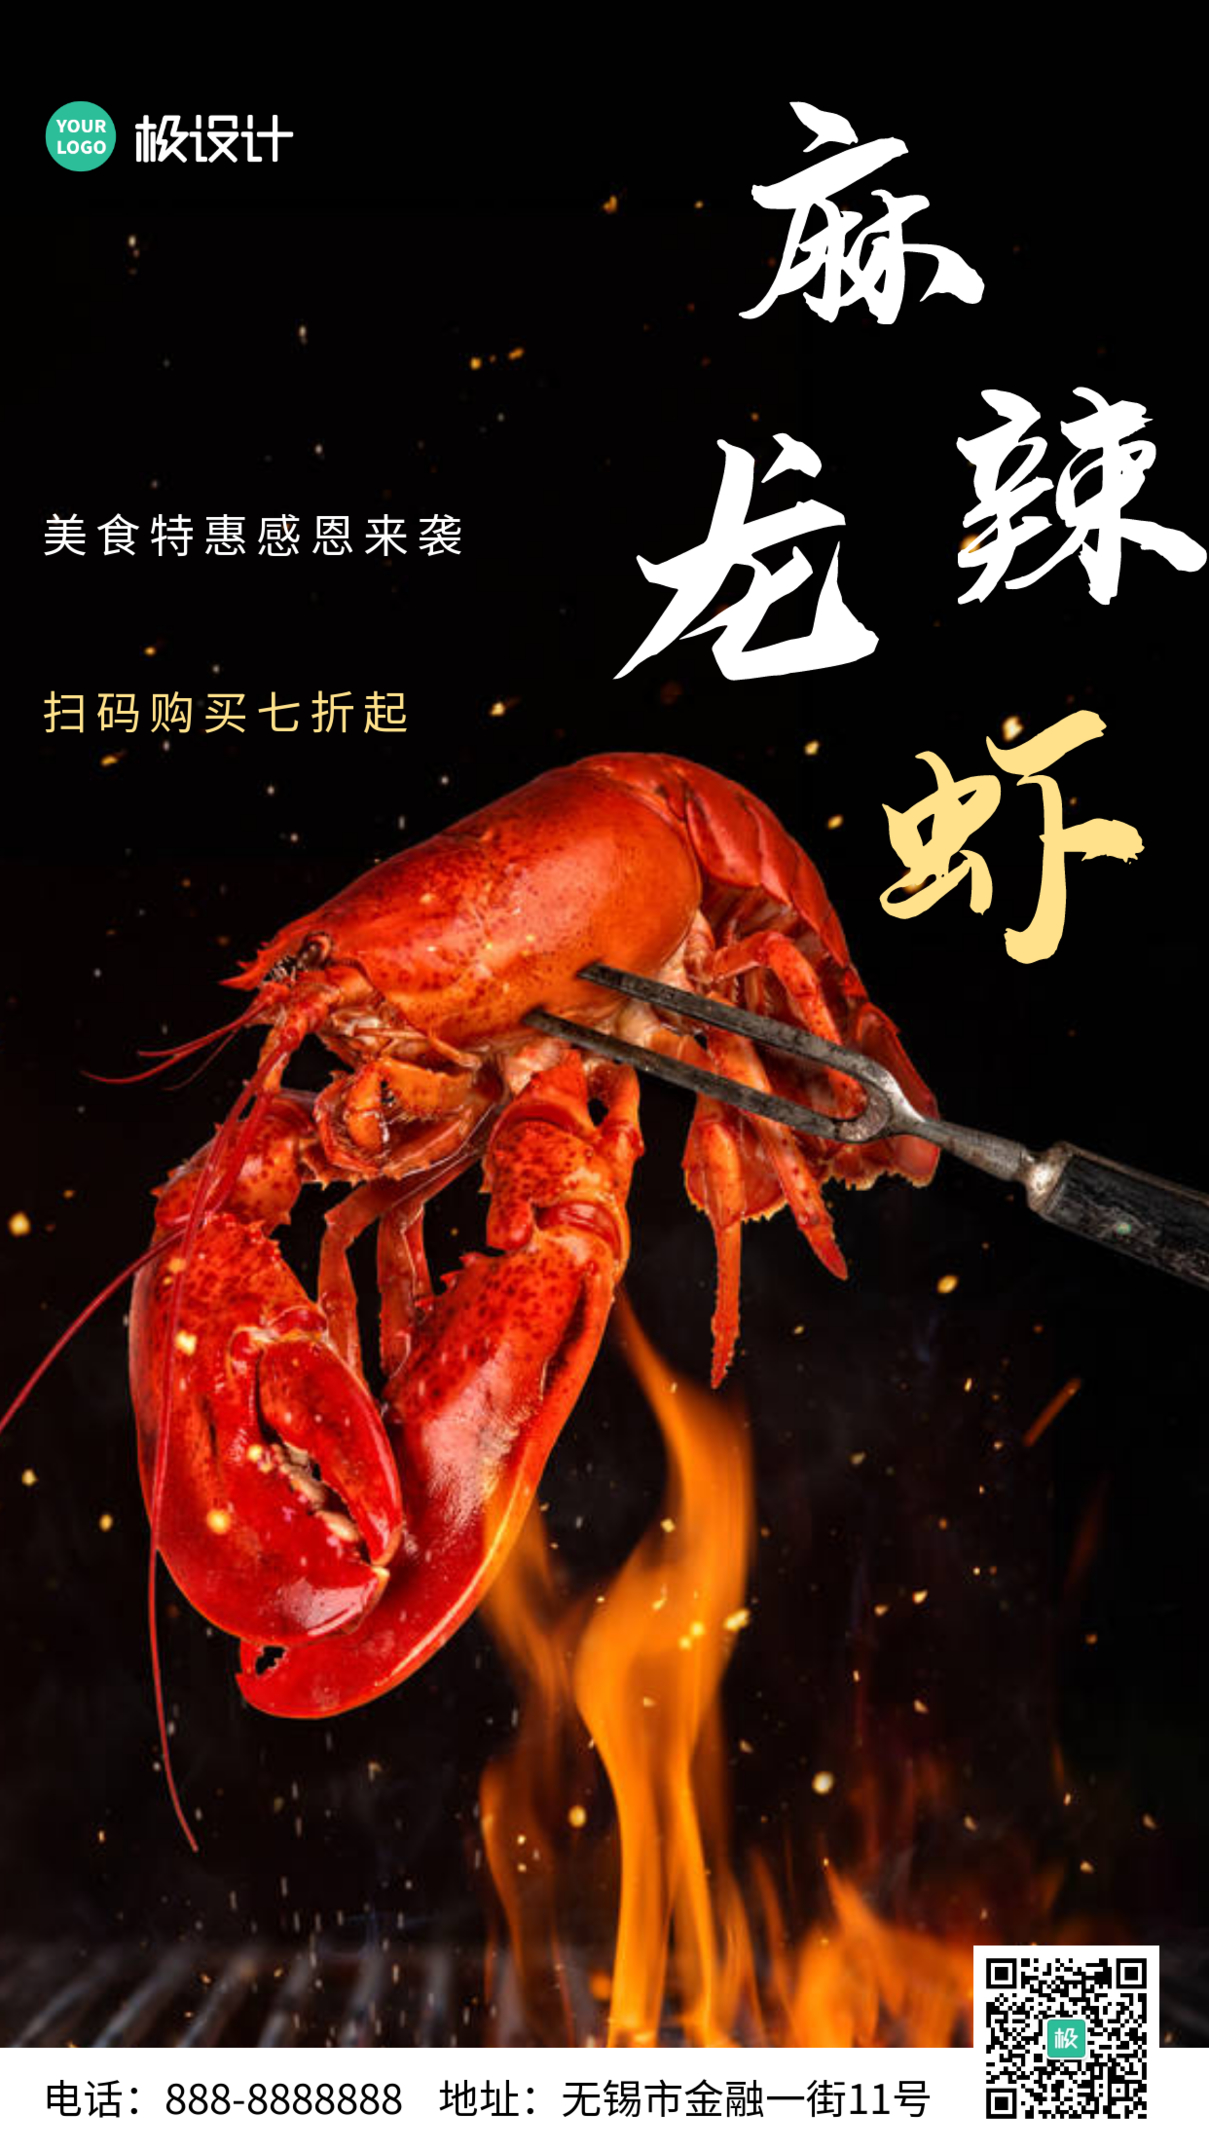 创意摄影风麻辣小龙虾特惠宣传手机营销海报